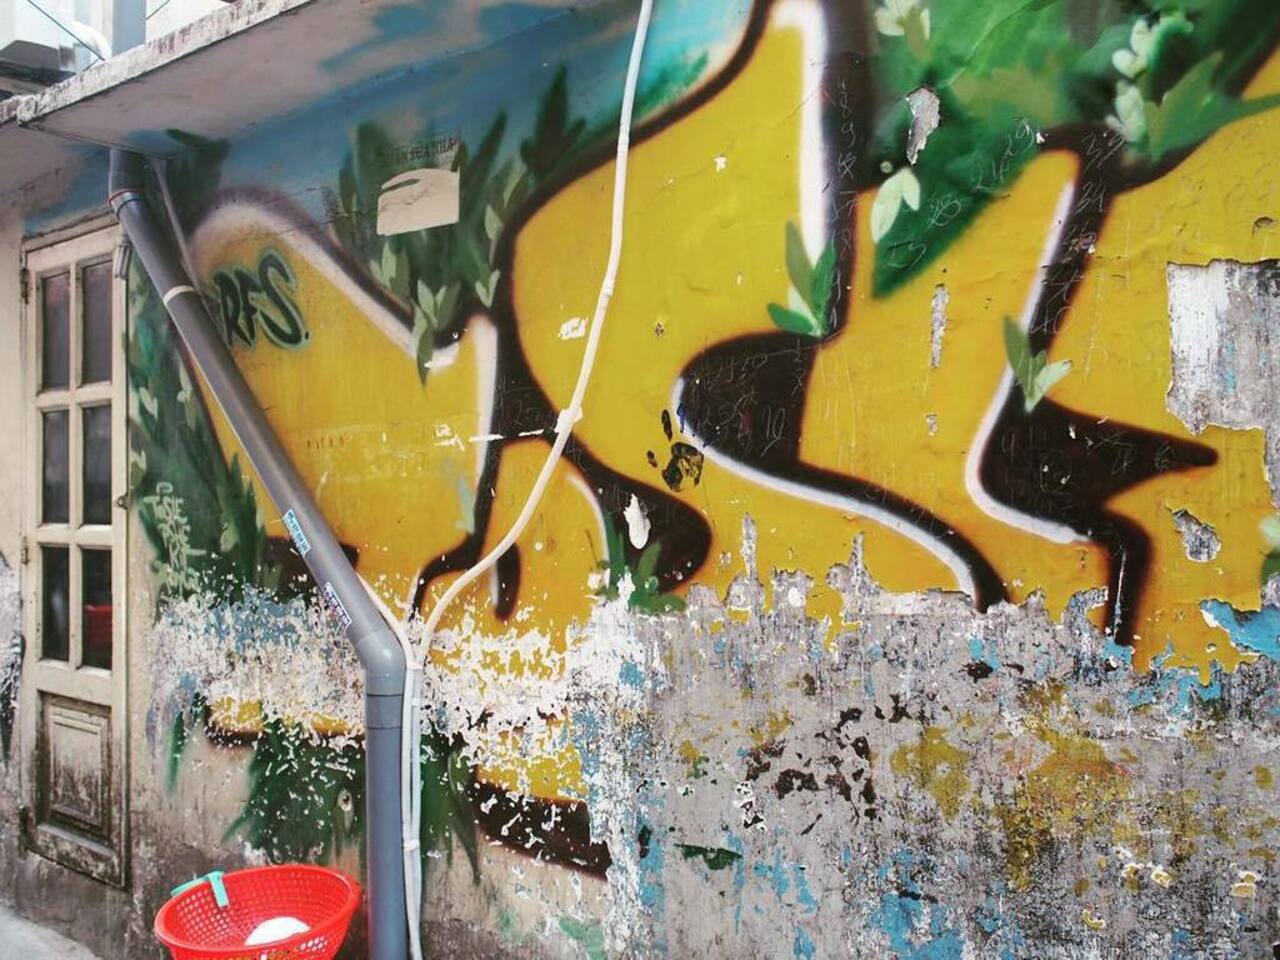 #streetart #HCMC #helloVietnam #graffiti #igerhcmc #graff #spray http://ift.tt/1WbHWT0 https://t.co/0CFiavtBRh